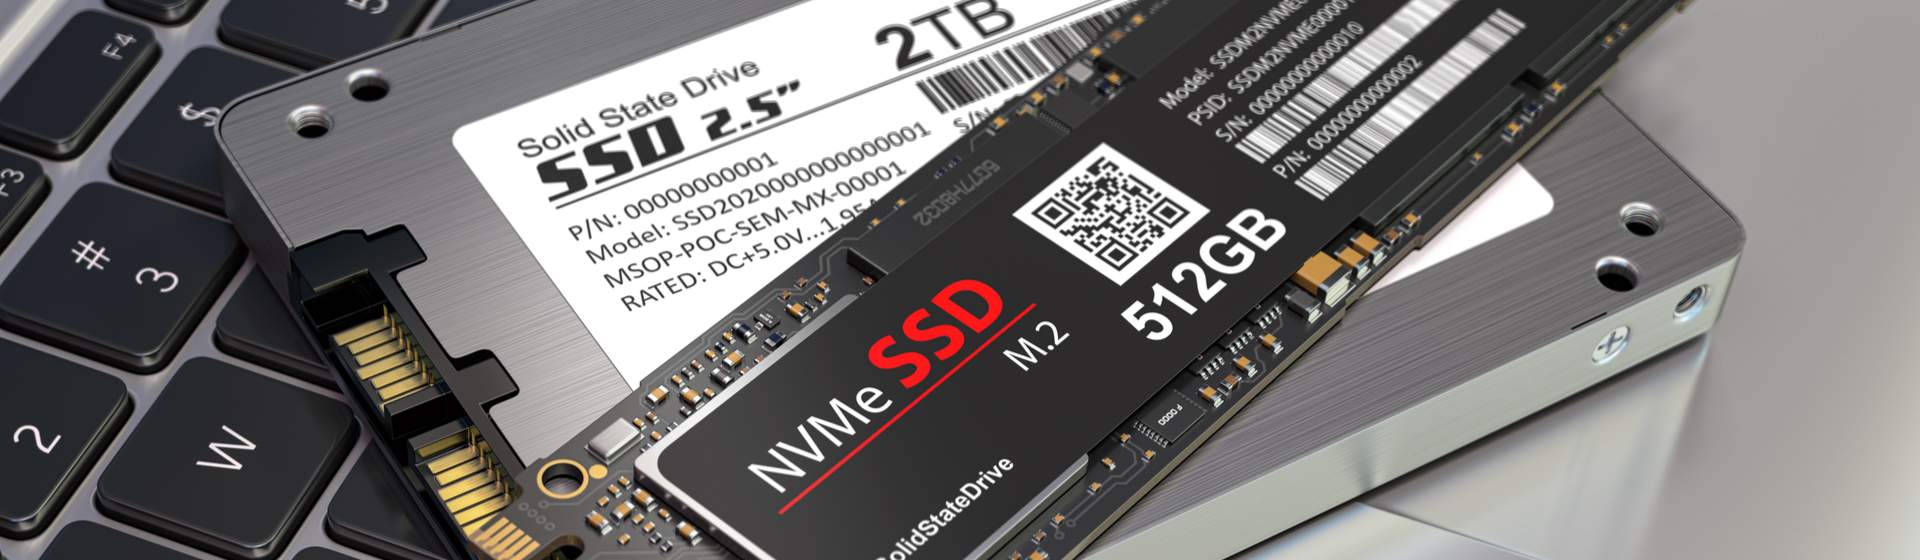 O que é SSD e como ele funciona? Saiba tudo sobre esse componente